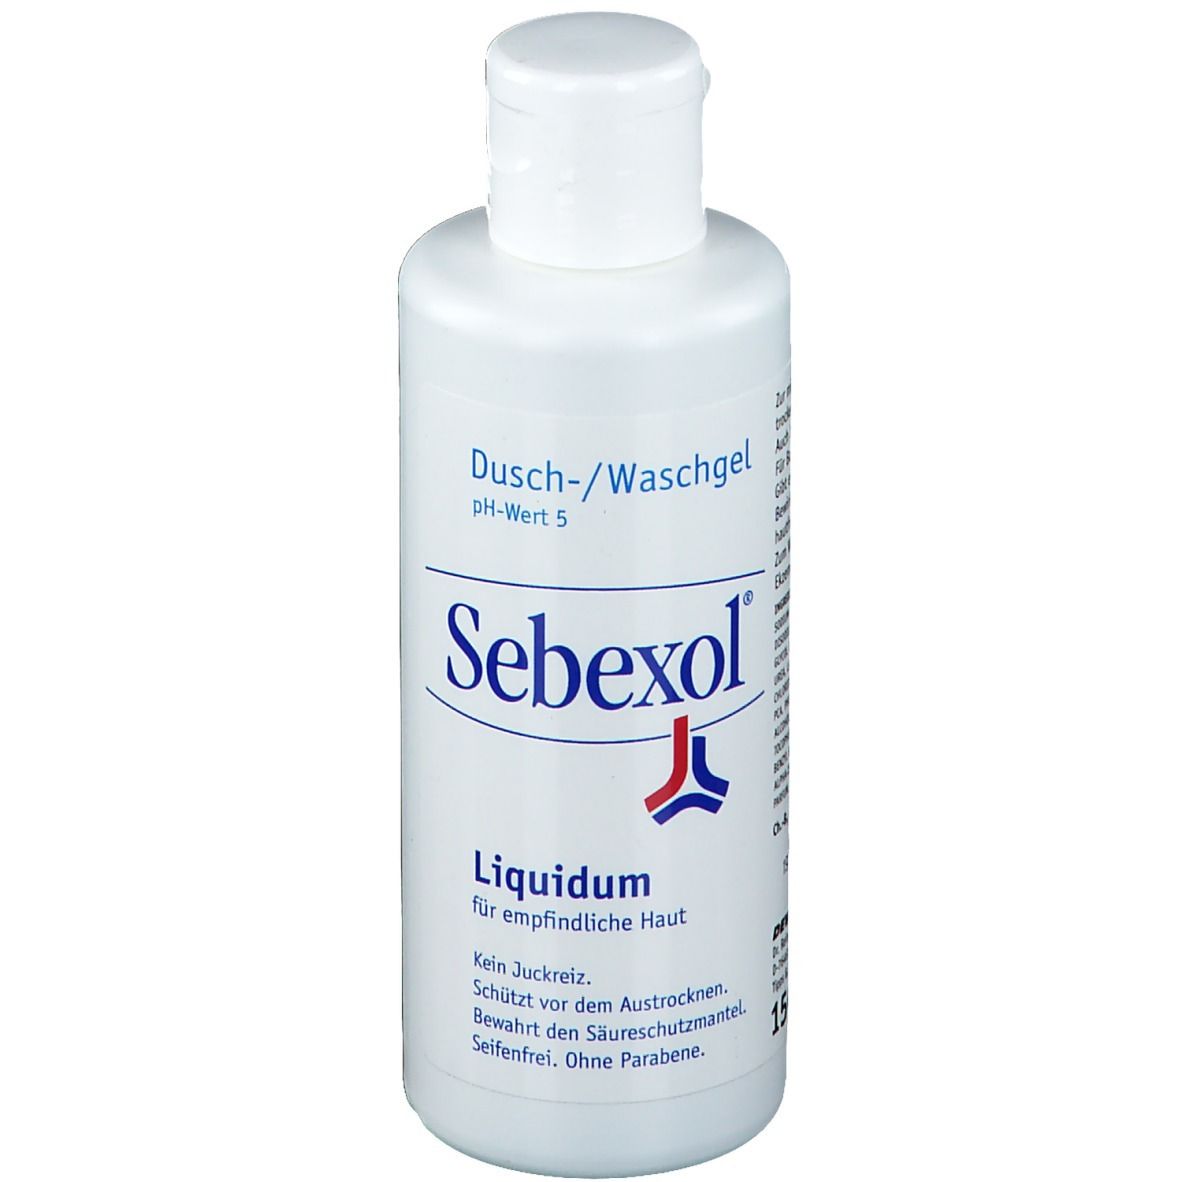 Sebexol® Liquidum Dusch- und Cremebad